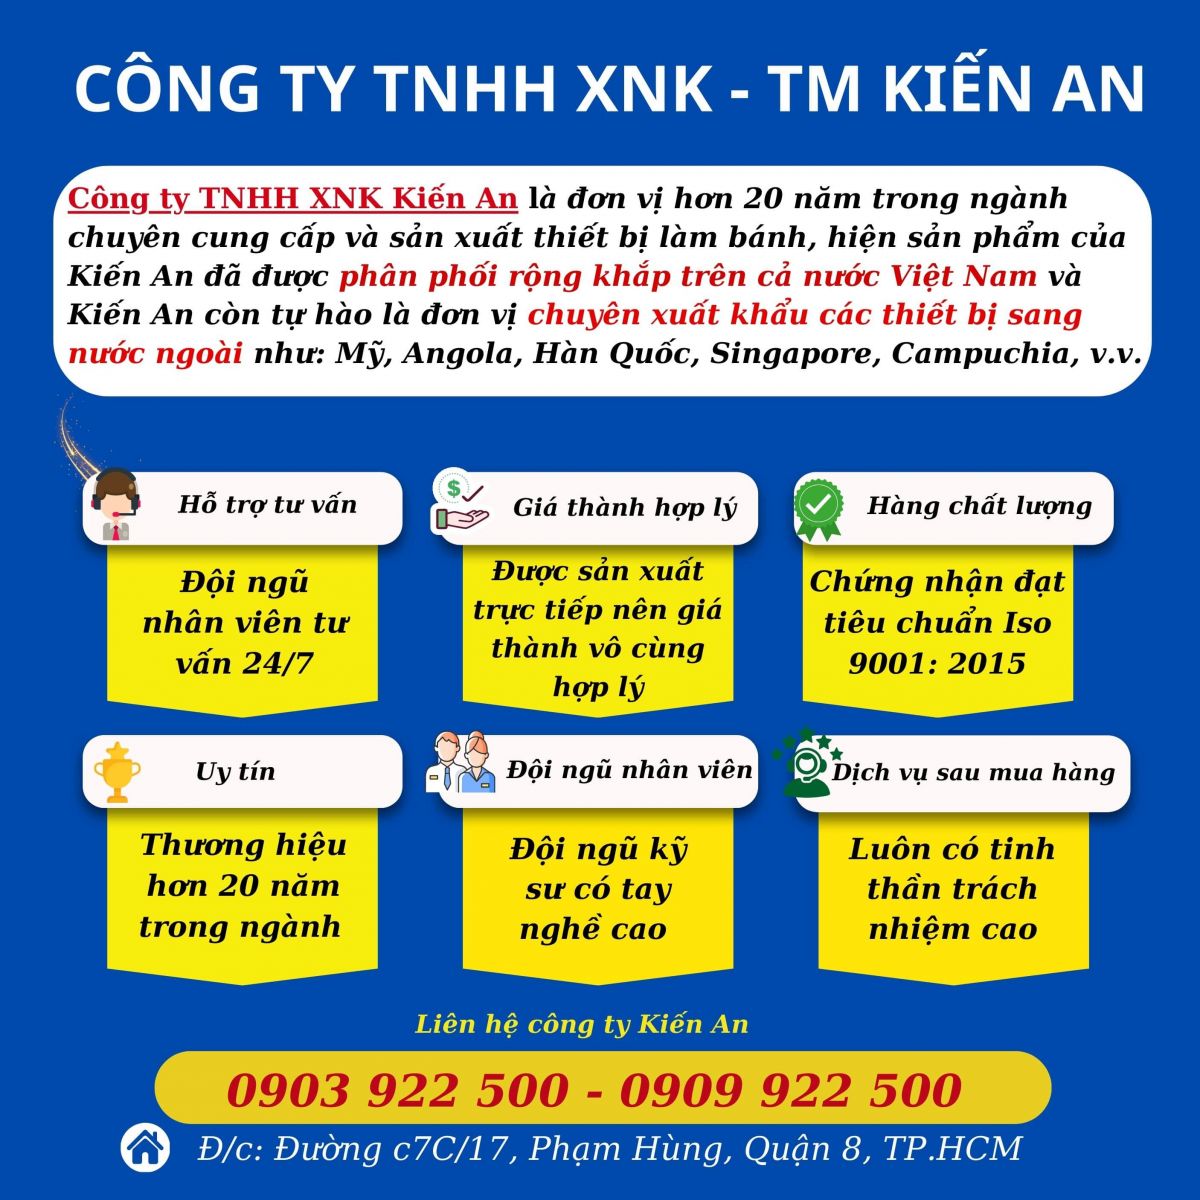 Chính sách bán hàng của công ty TNHH XNK Kiến An